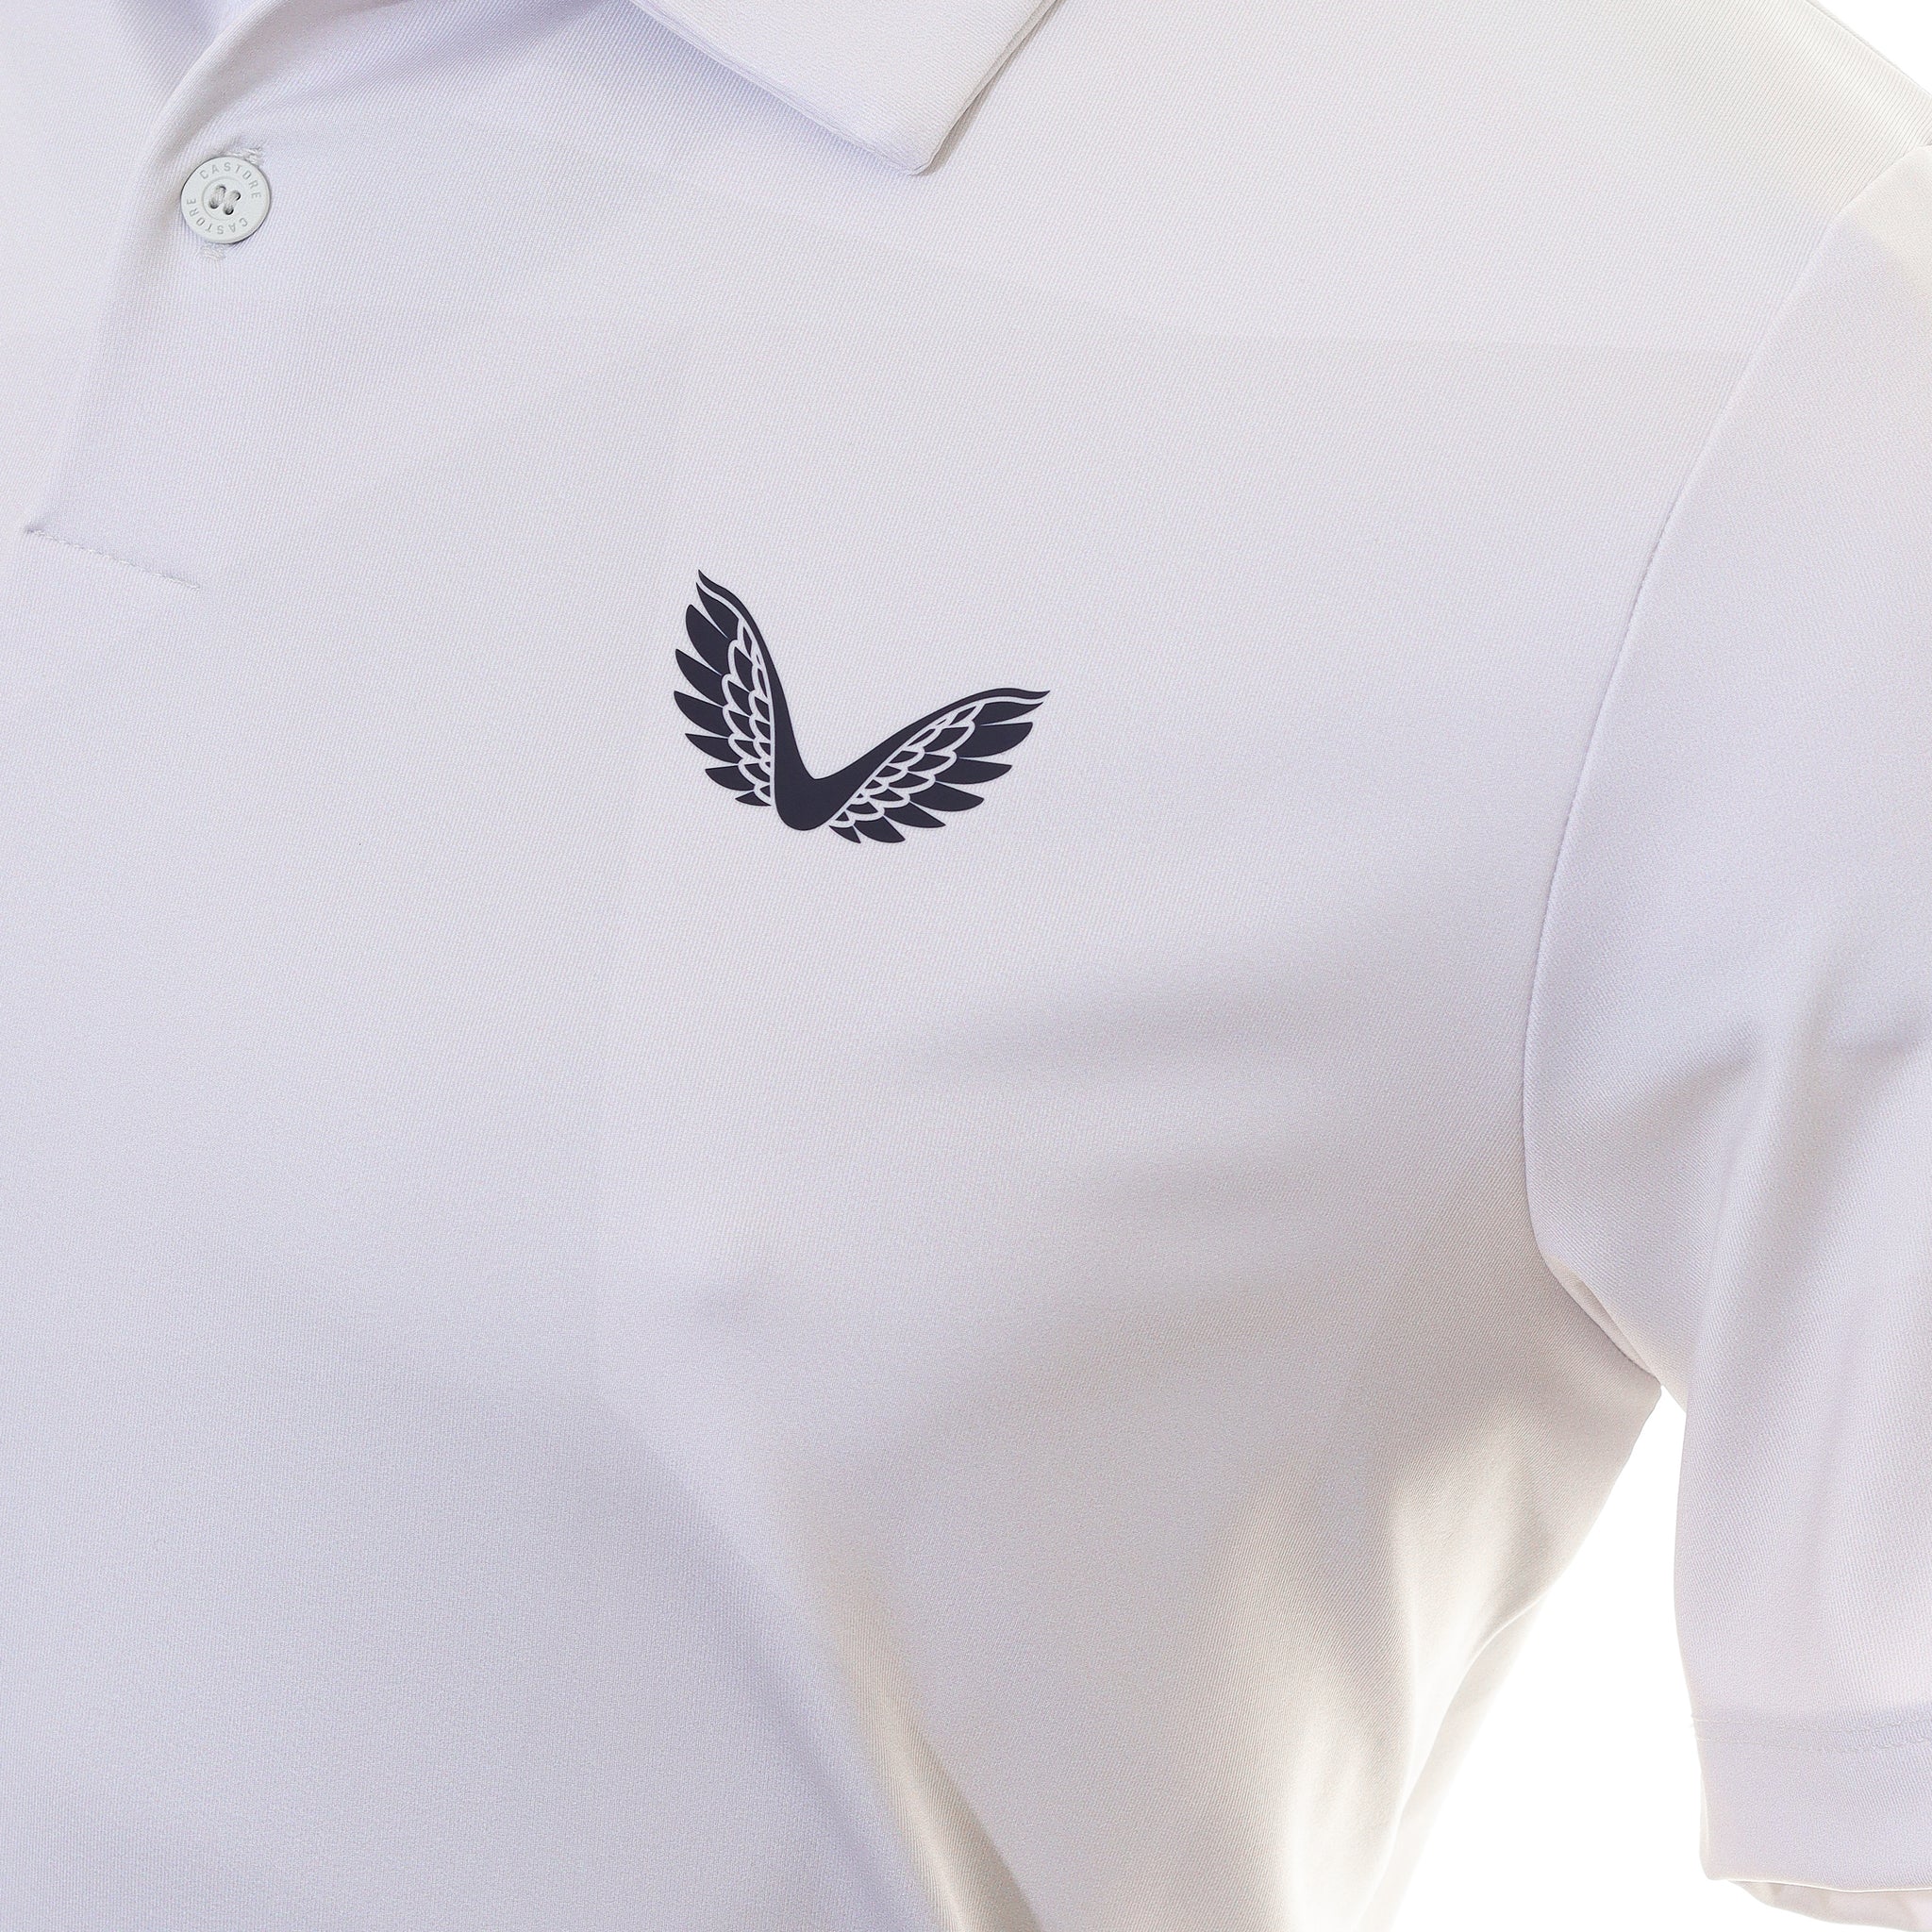 castore-printed-golf-polo-shirt-cma30363-white